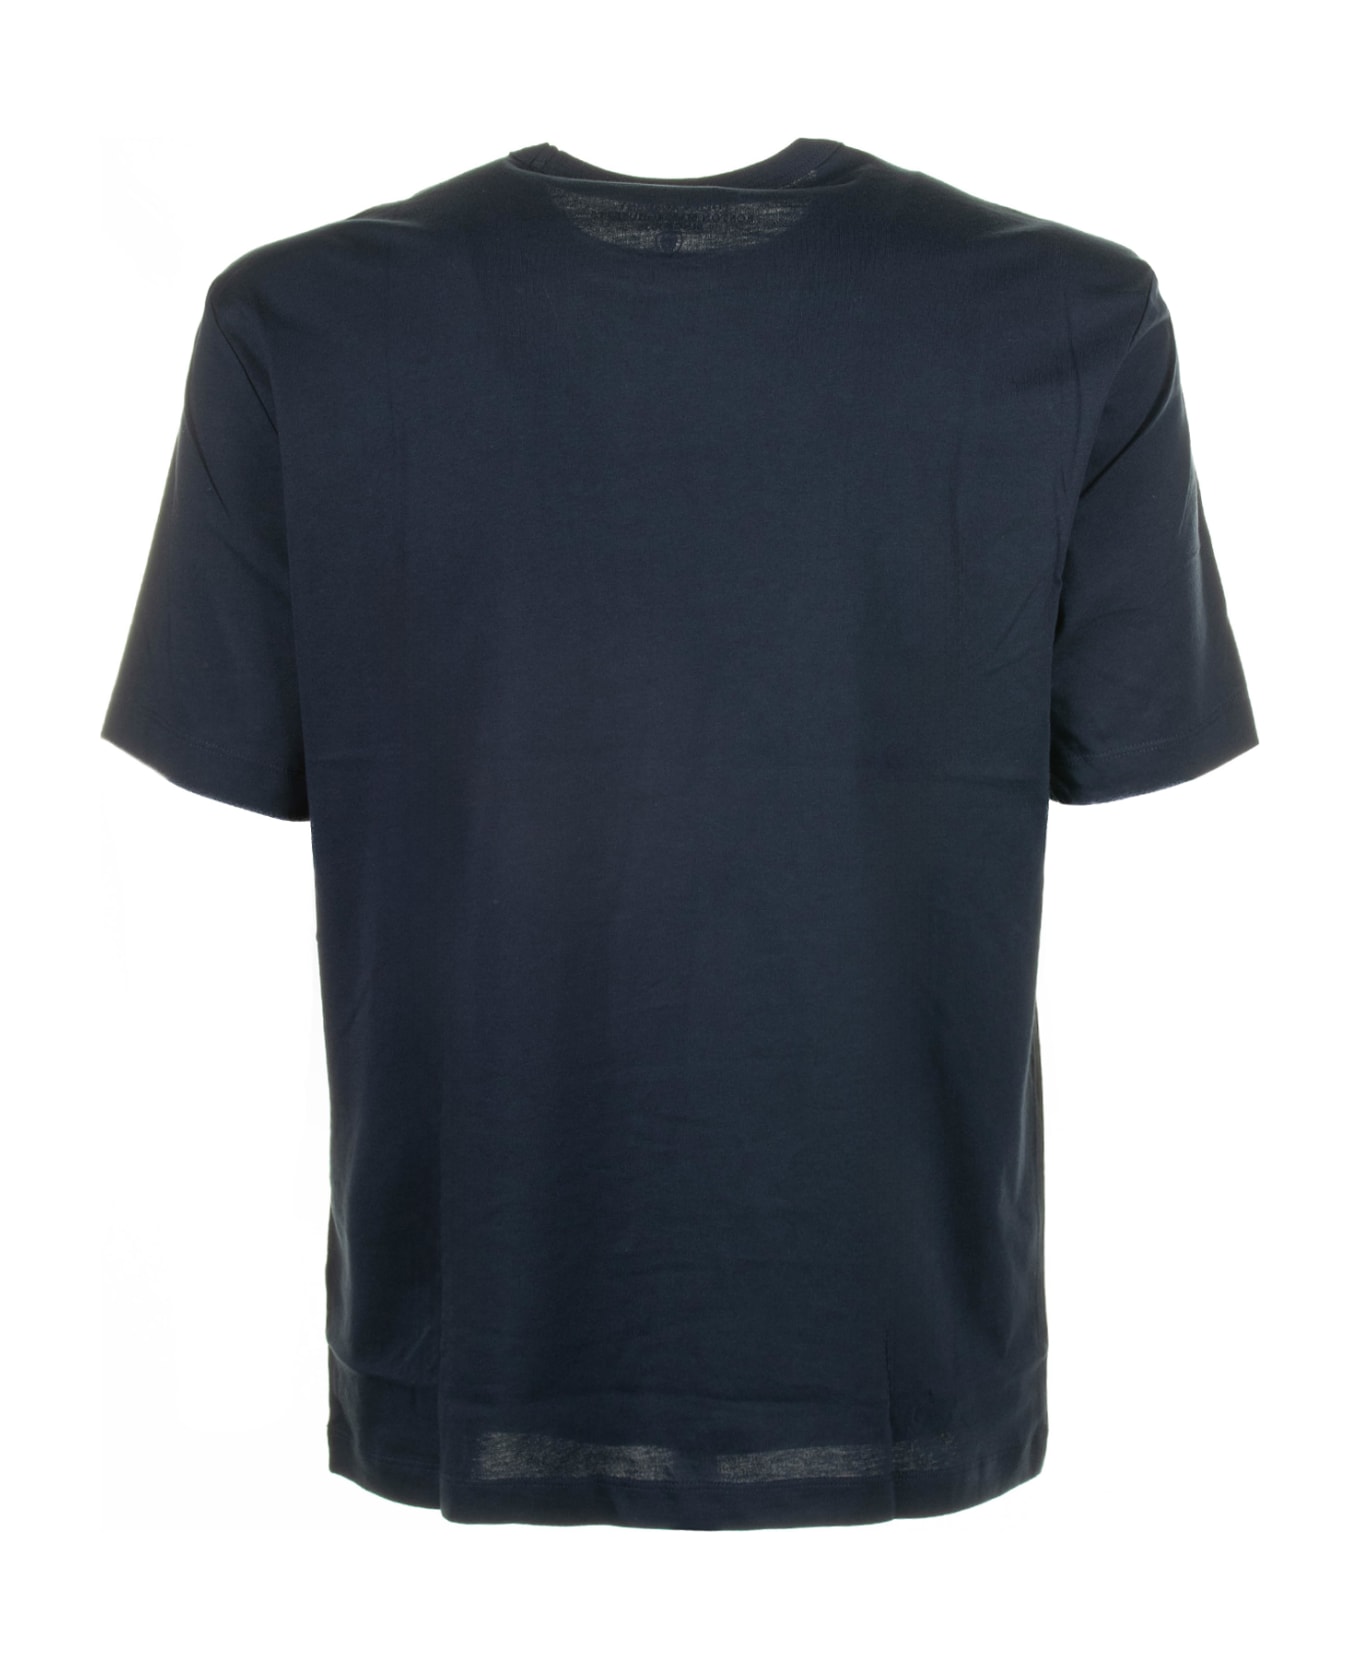 Blauer Blue Crew Neck T-shirt In Cotton - Blu シャツ